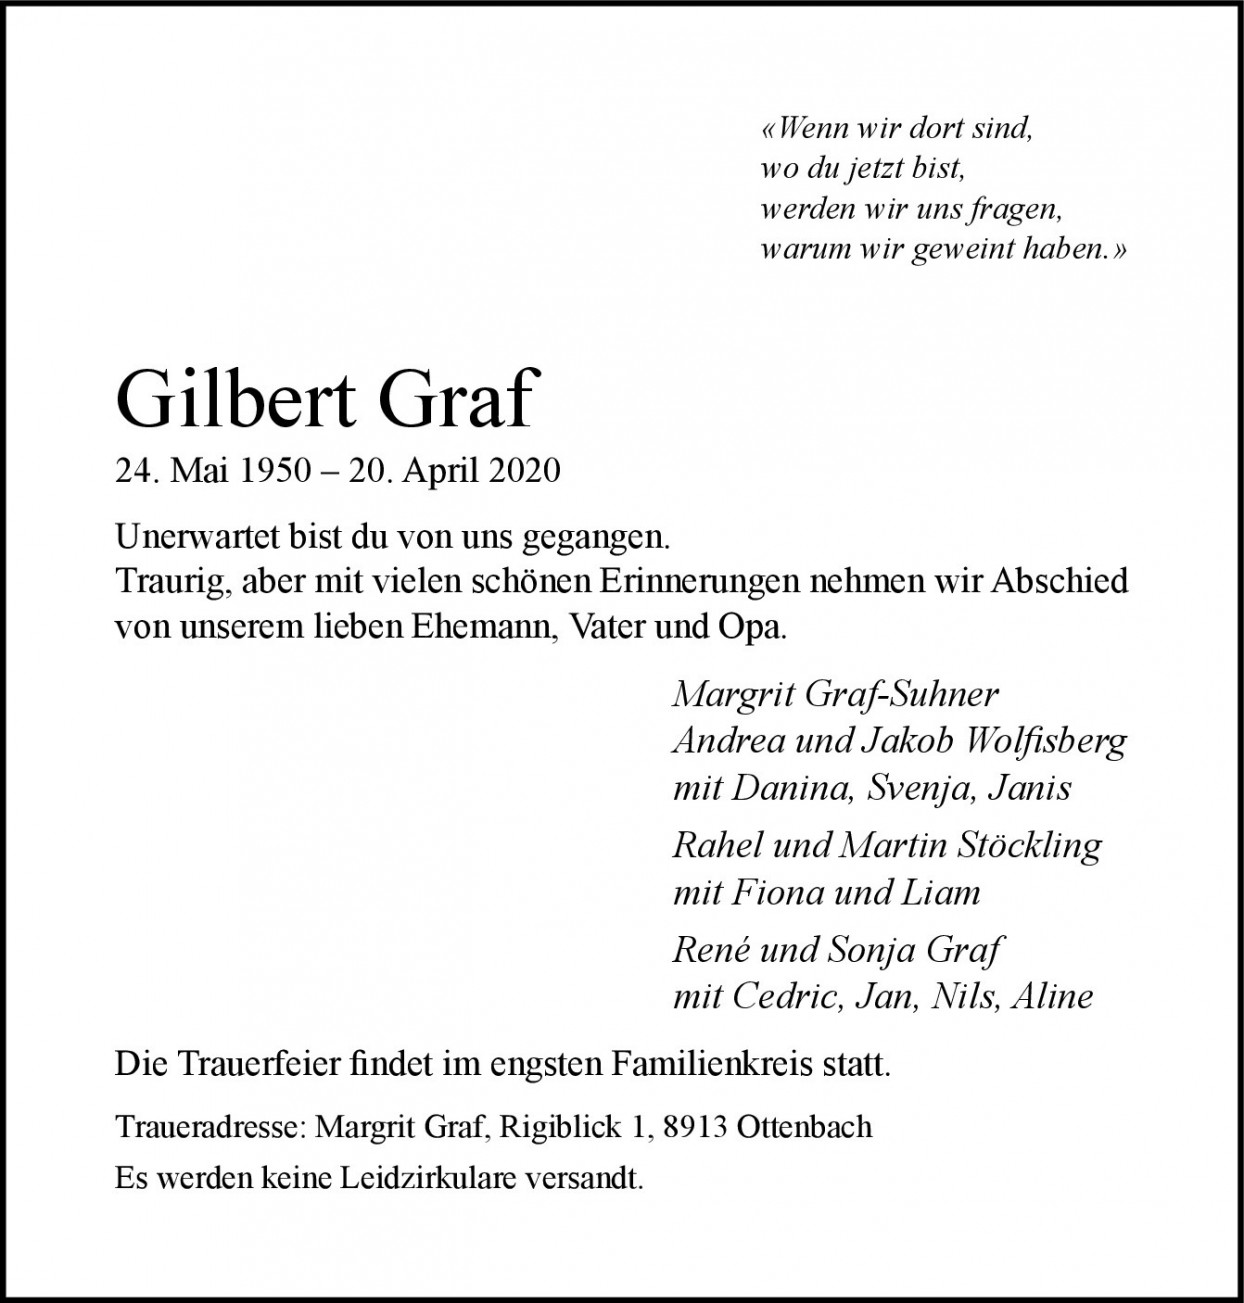 Gilbert Graf